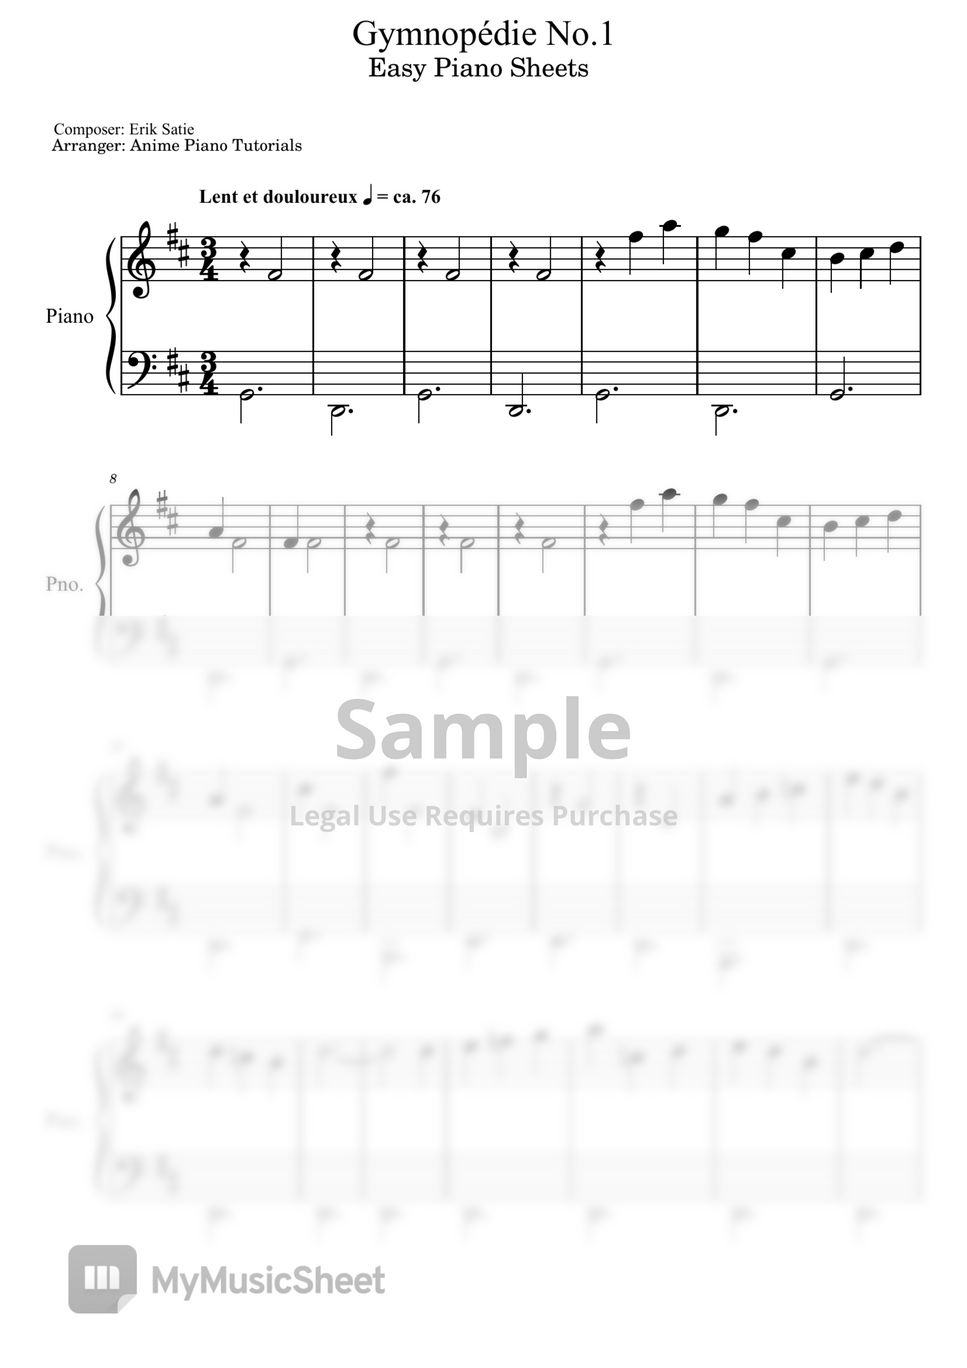 Erik Satie - Gymnopédie No.1 by Anime Piano Tutorials